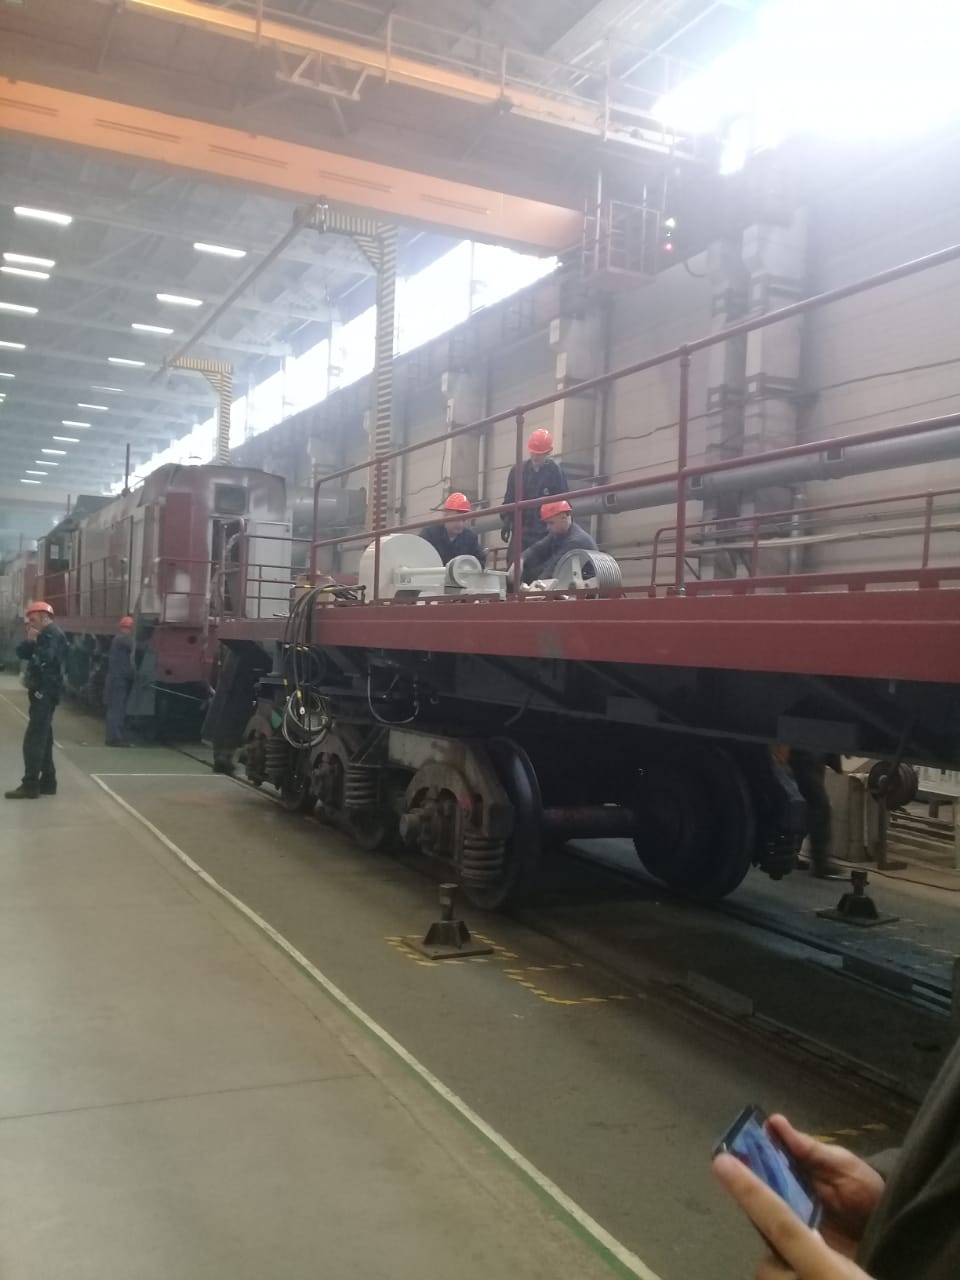  جولة لليوم السابع بمصنع جرارات السكة الحديد الروسى (27)